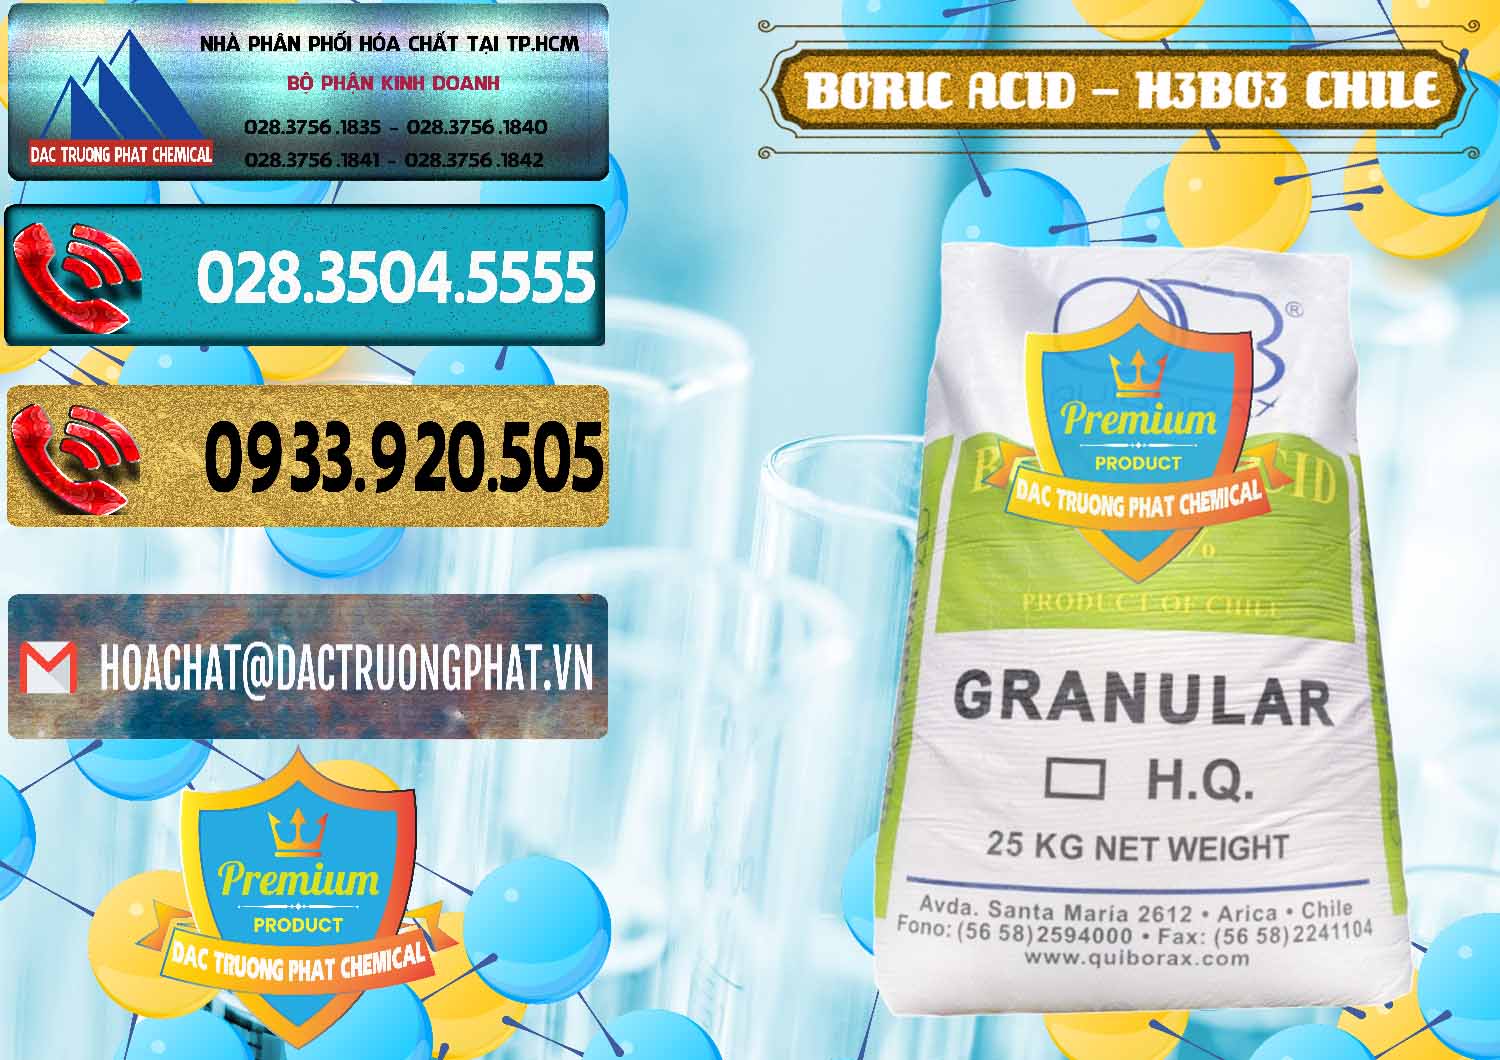 Chuyên bán _ phân phối Acid Boric – Axit Boric H3BO3 99% Quiborax Chile - 0281 - Nơi nhập khẩu - cung cấp hóa chất tại TP.HCM - hoachatdetnhuom.com